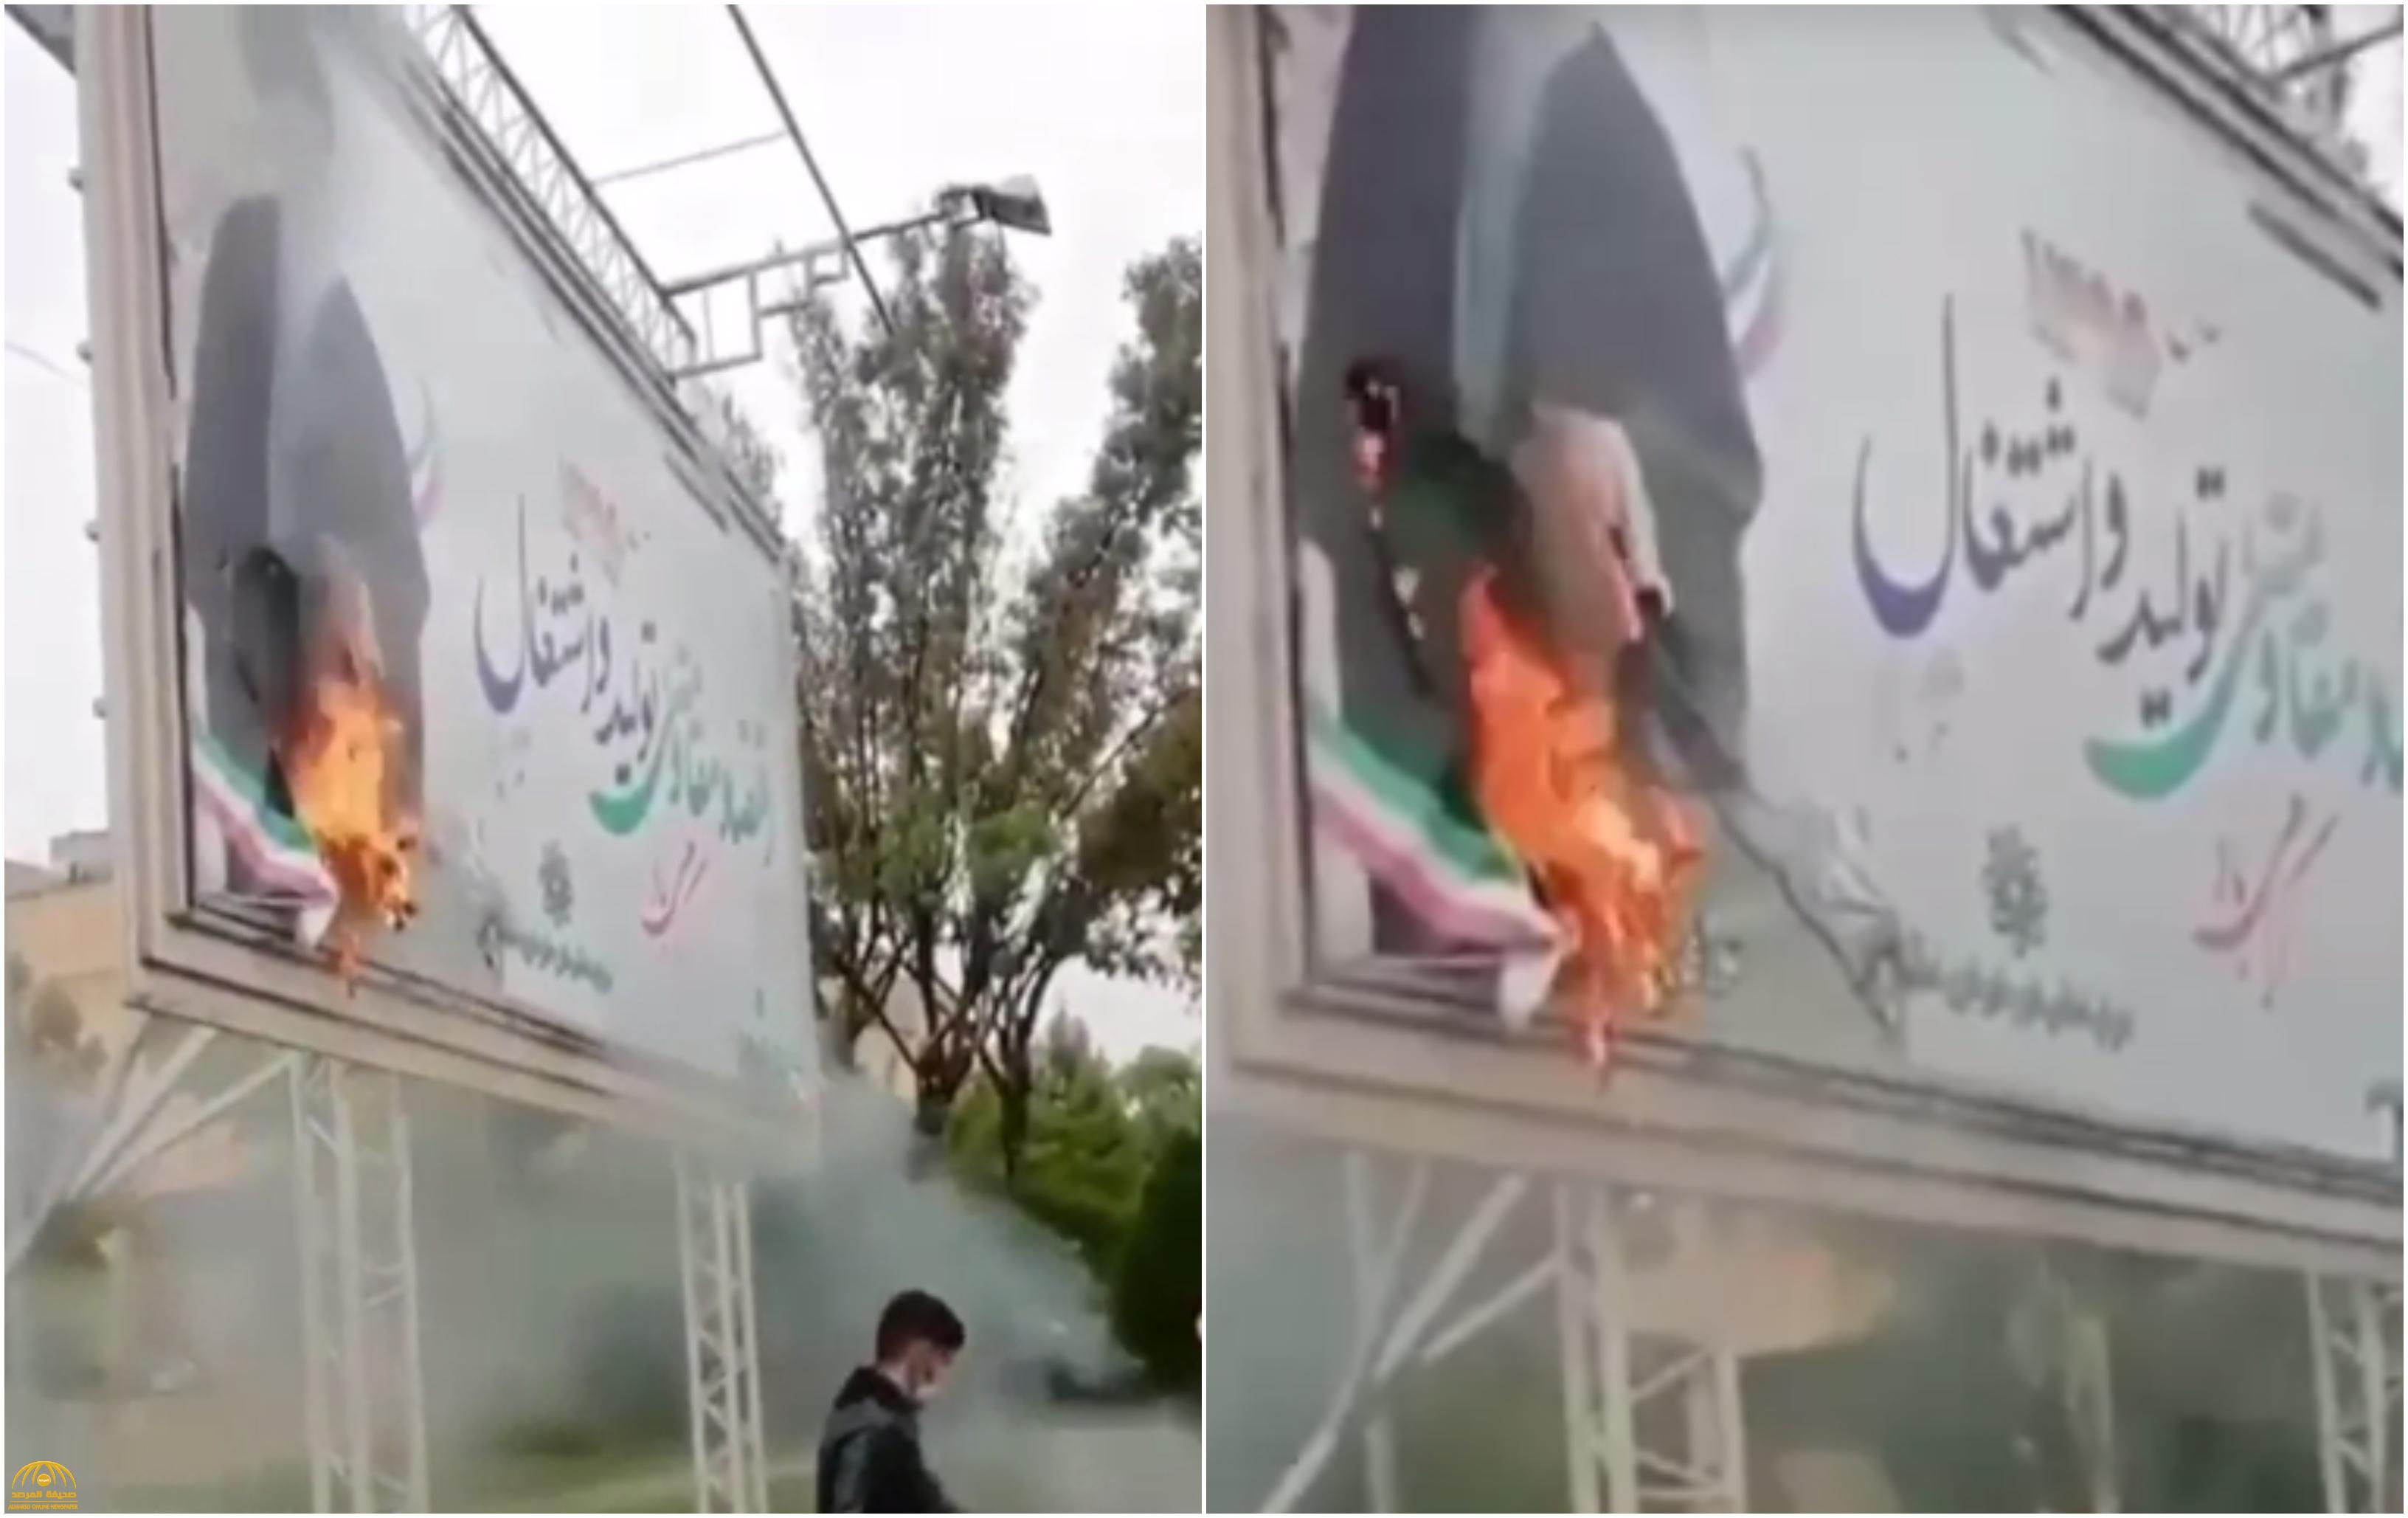 بوادر ثورة شعبية.. شاهد: حرق صورة ضخمة للمرشد الإيراني "علي خامنئي" قرب العاصمة طهران